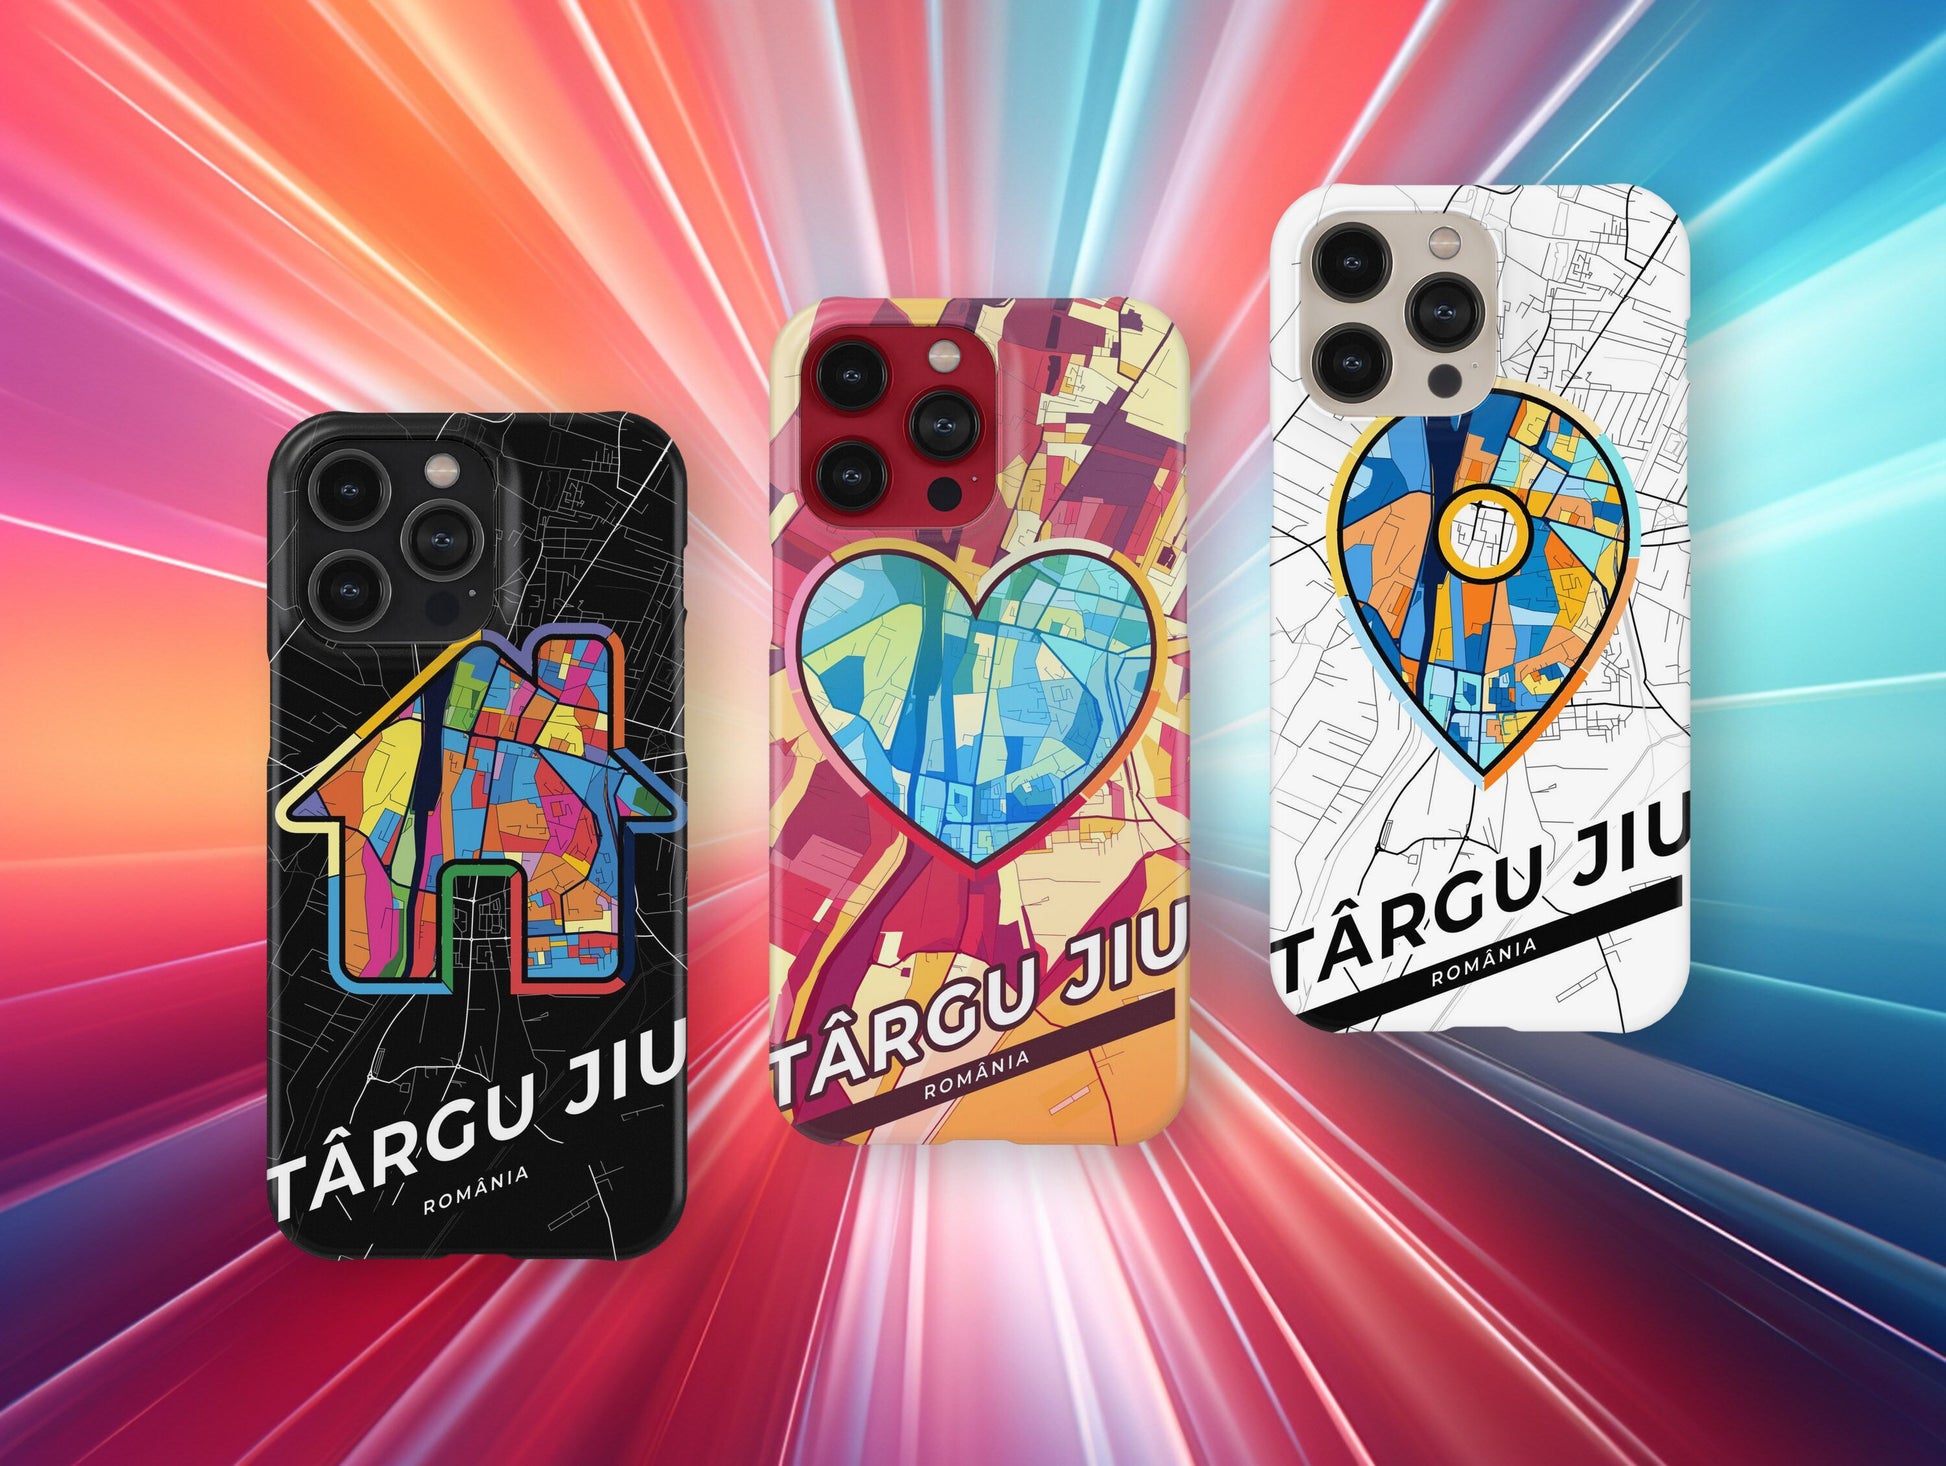 Târgu Jiu Romania slim phone case with colorful icon